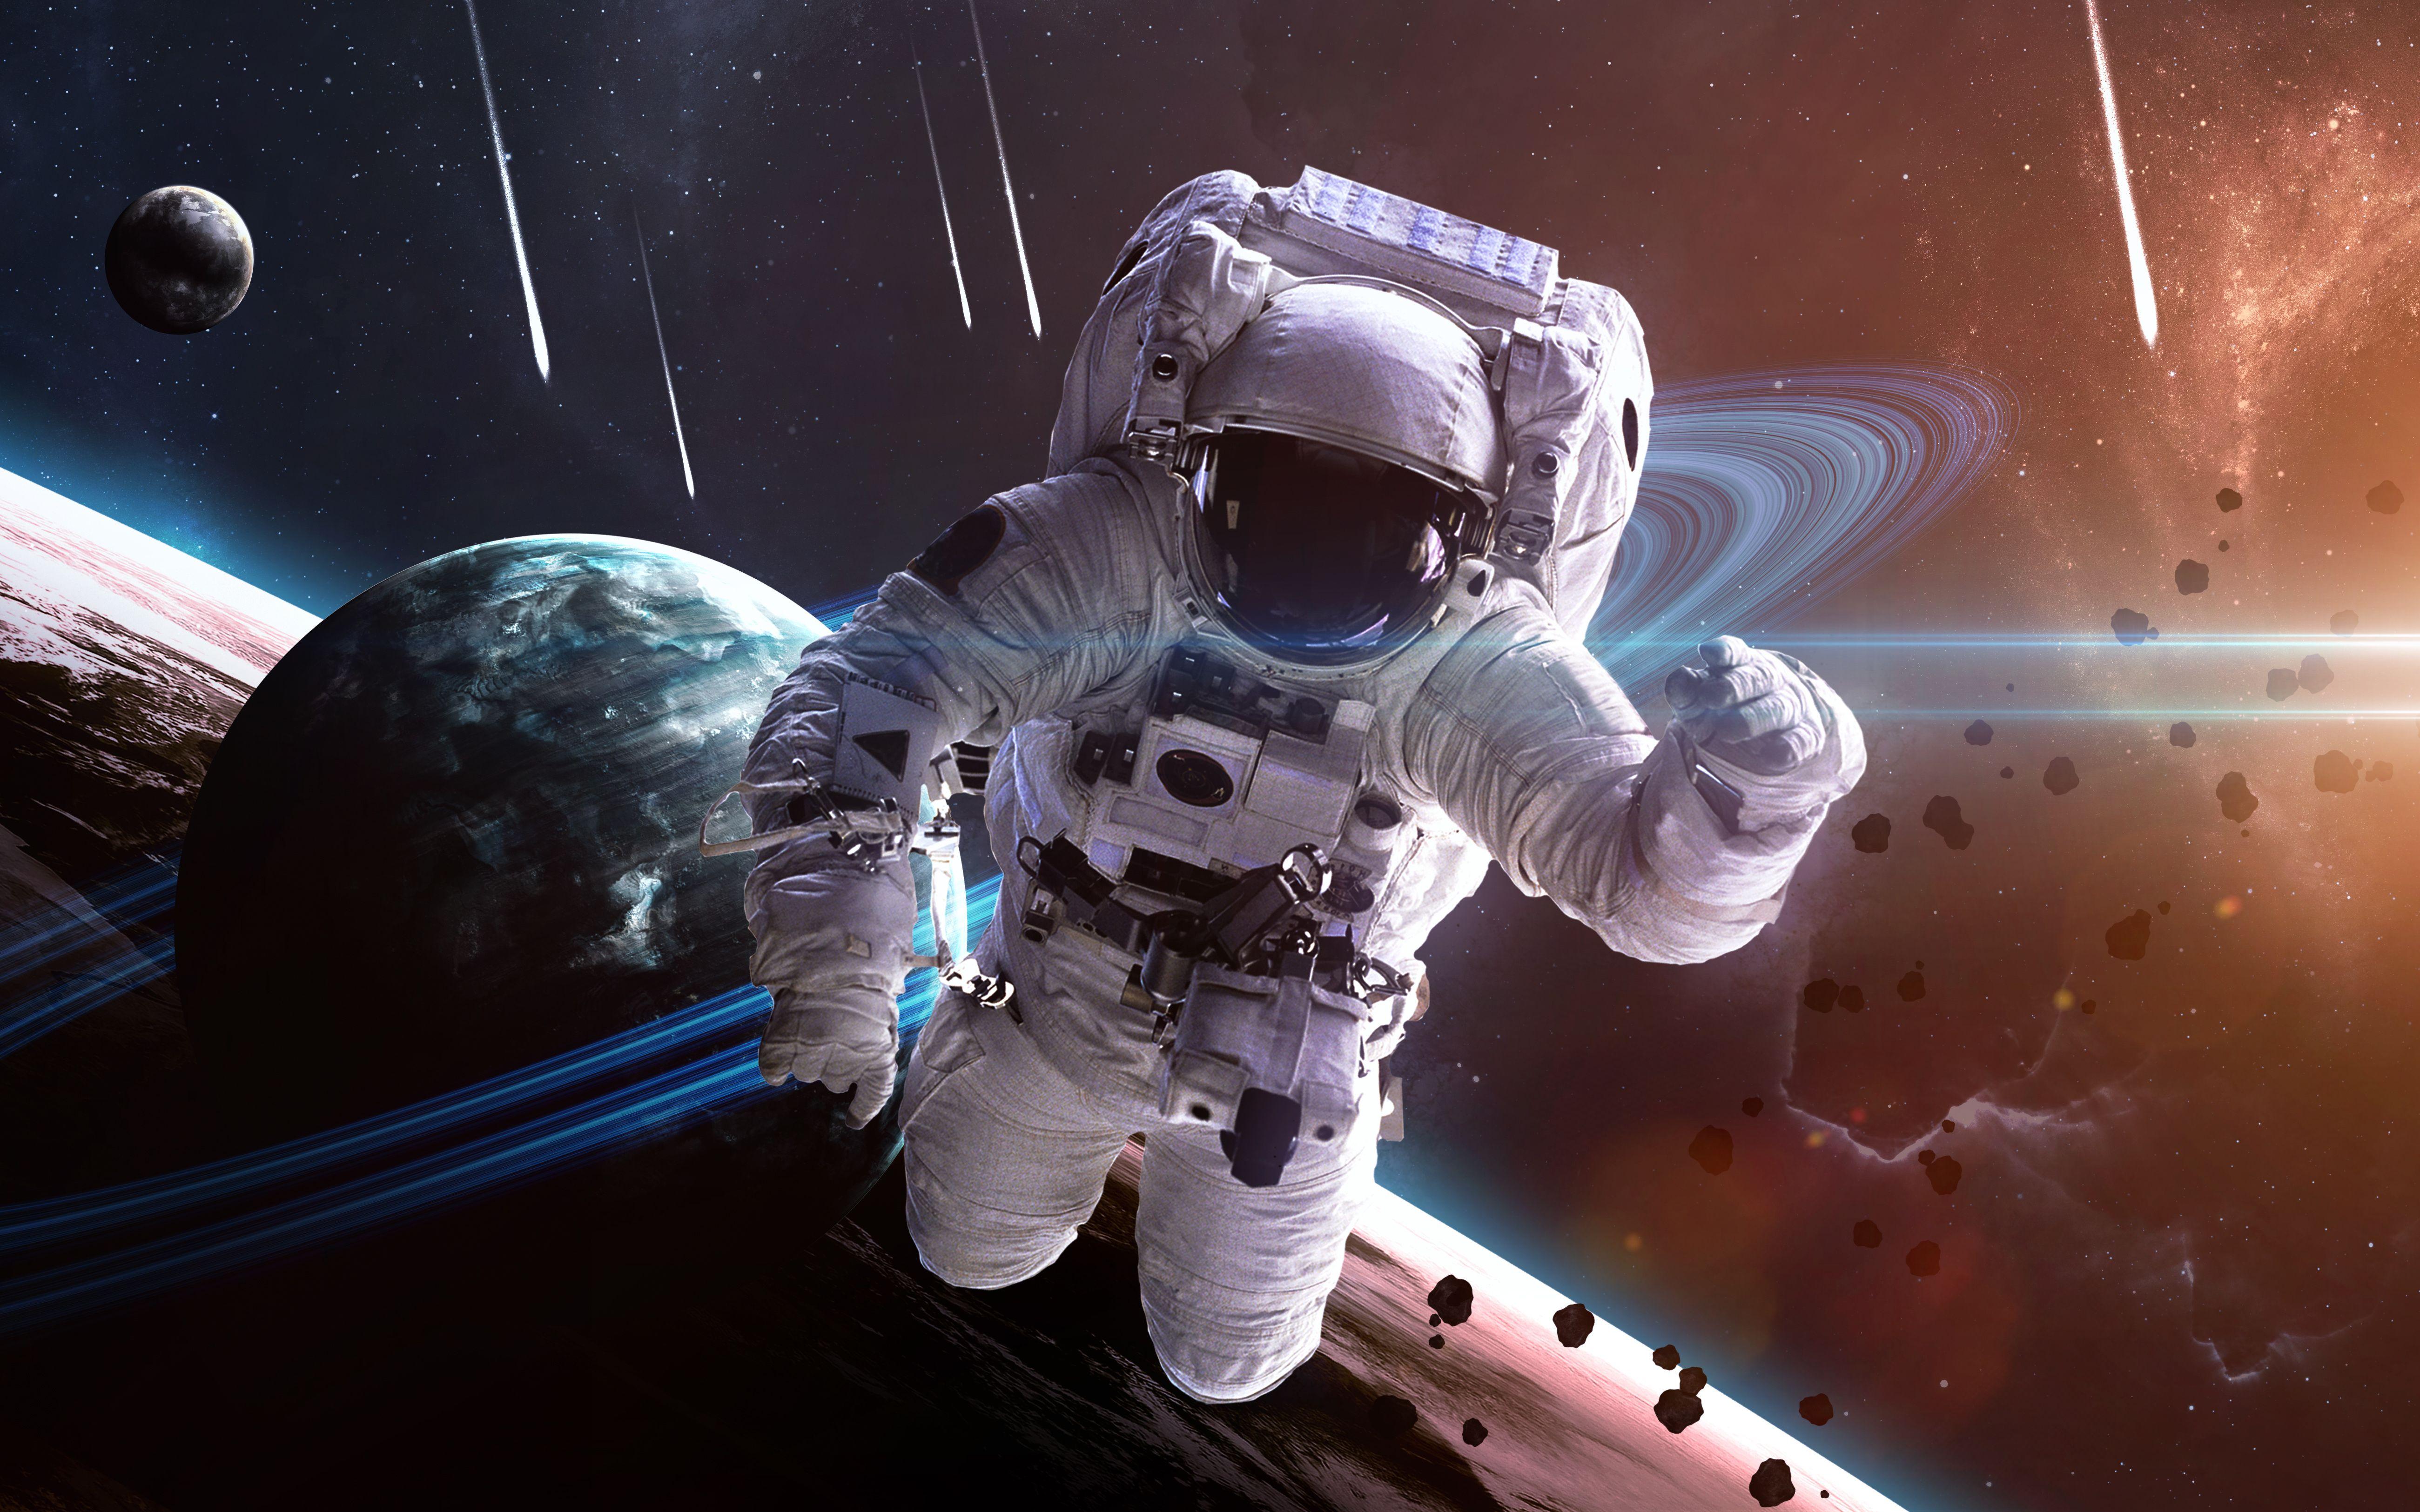 4K Astronaut Wallpapers - Top Free 4K Astronaut Backgrounds